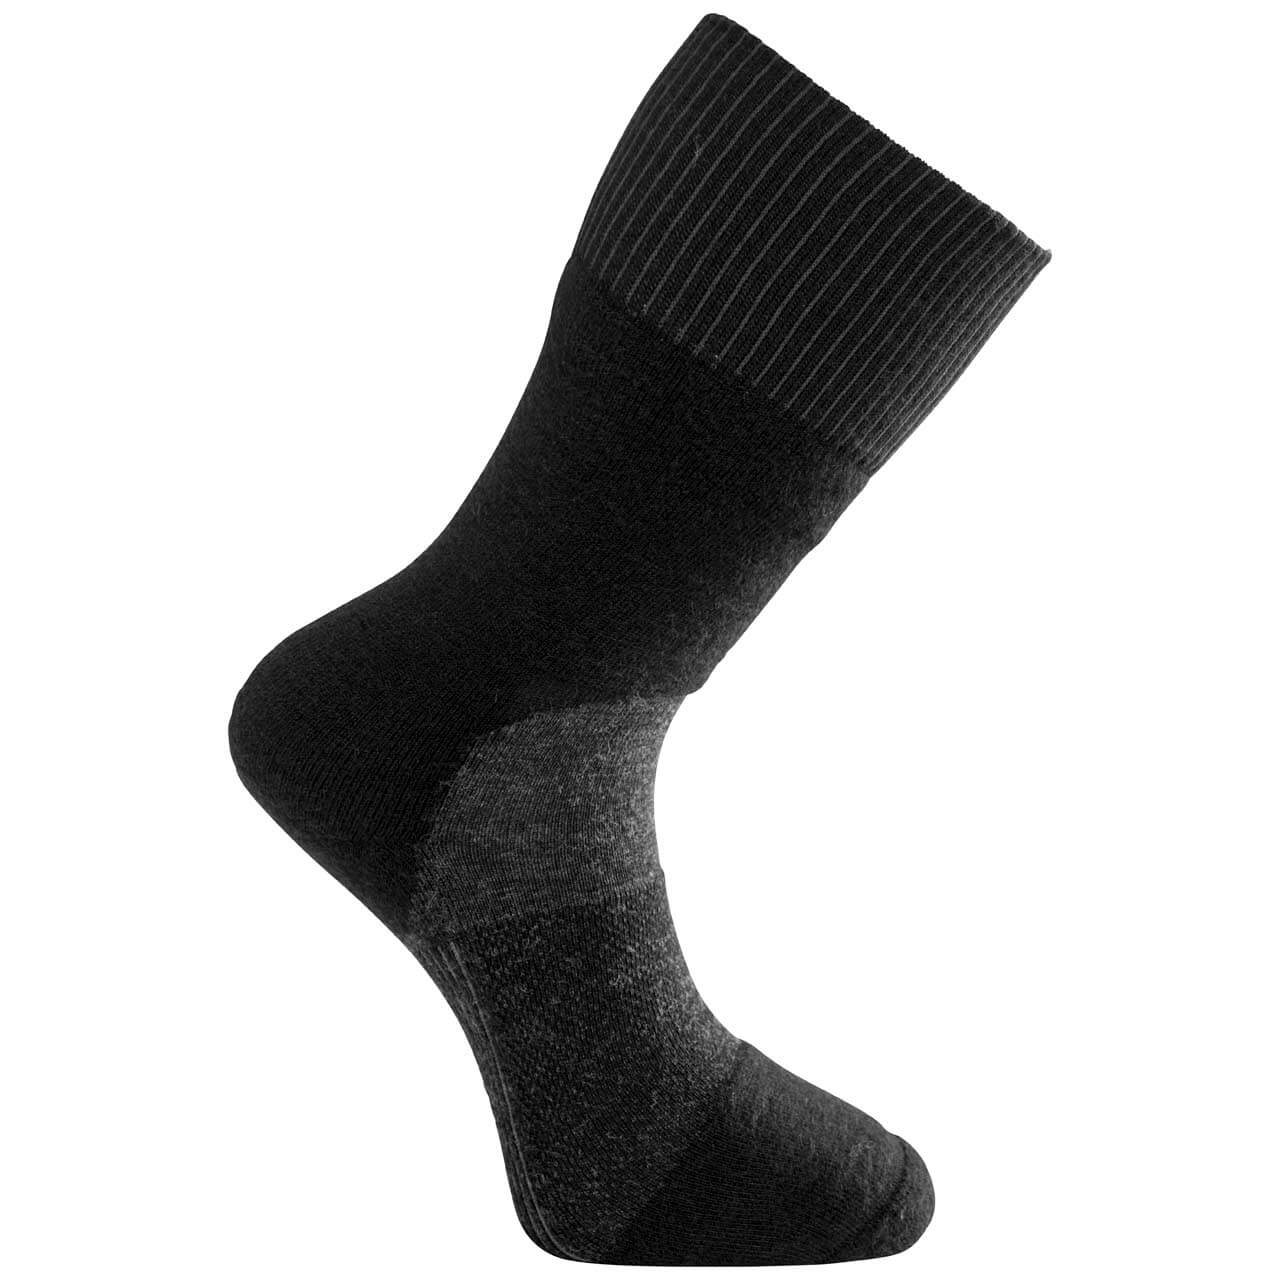 Woolpower Skilled Socken 400 - Black/Dark Grey, 40-44 von Woolpower}